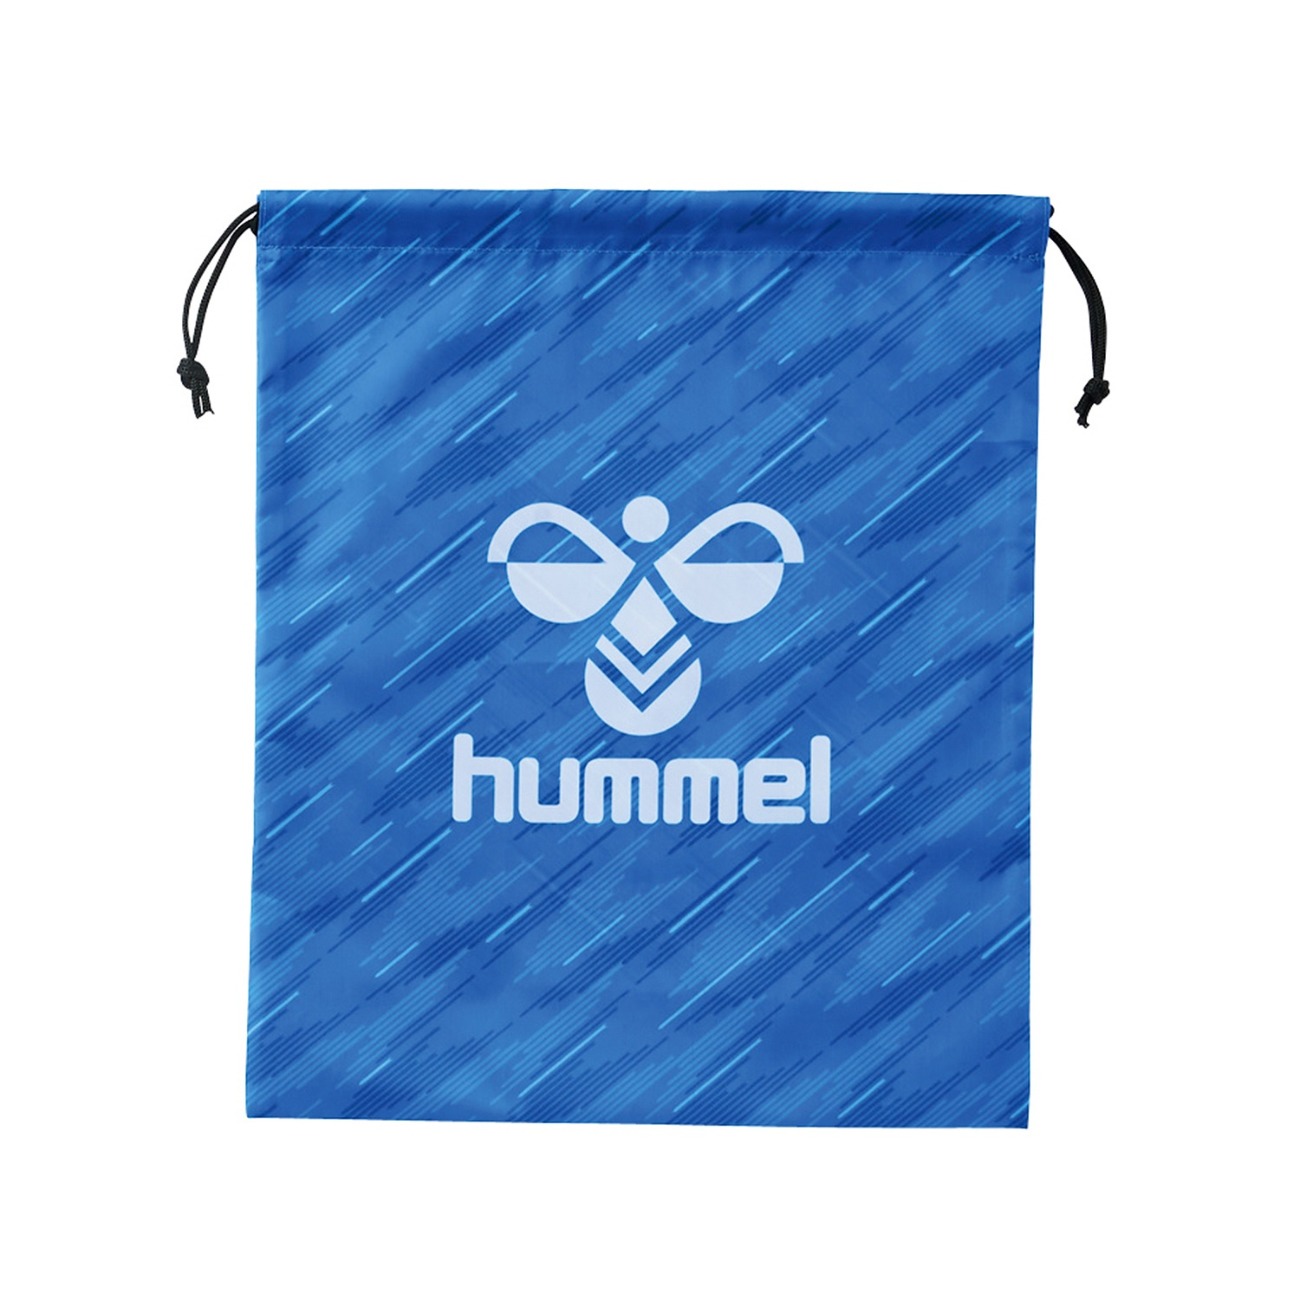 hummel(ヒュンメル)-S マルチバッグ ノルディックブルー SSK公式オンラインストア「SSK STORES」｜スポーツウェア/スニーカー/ライフスタイルアパレル通販